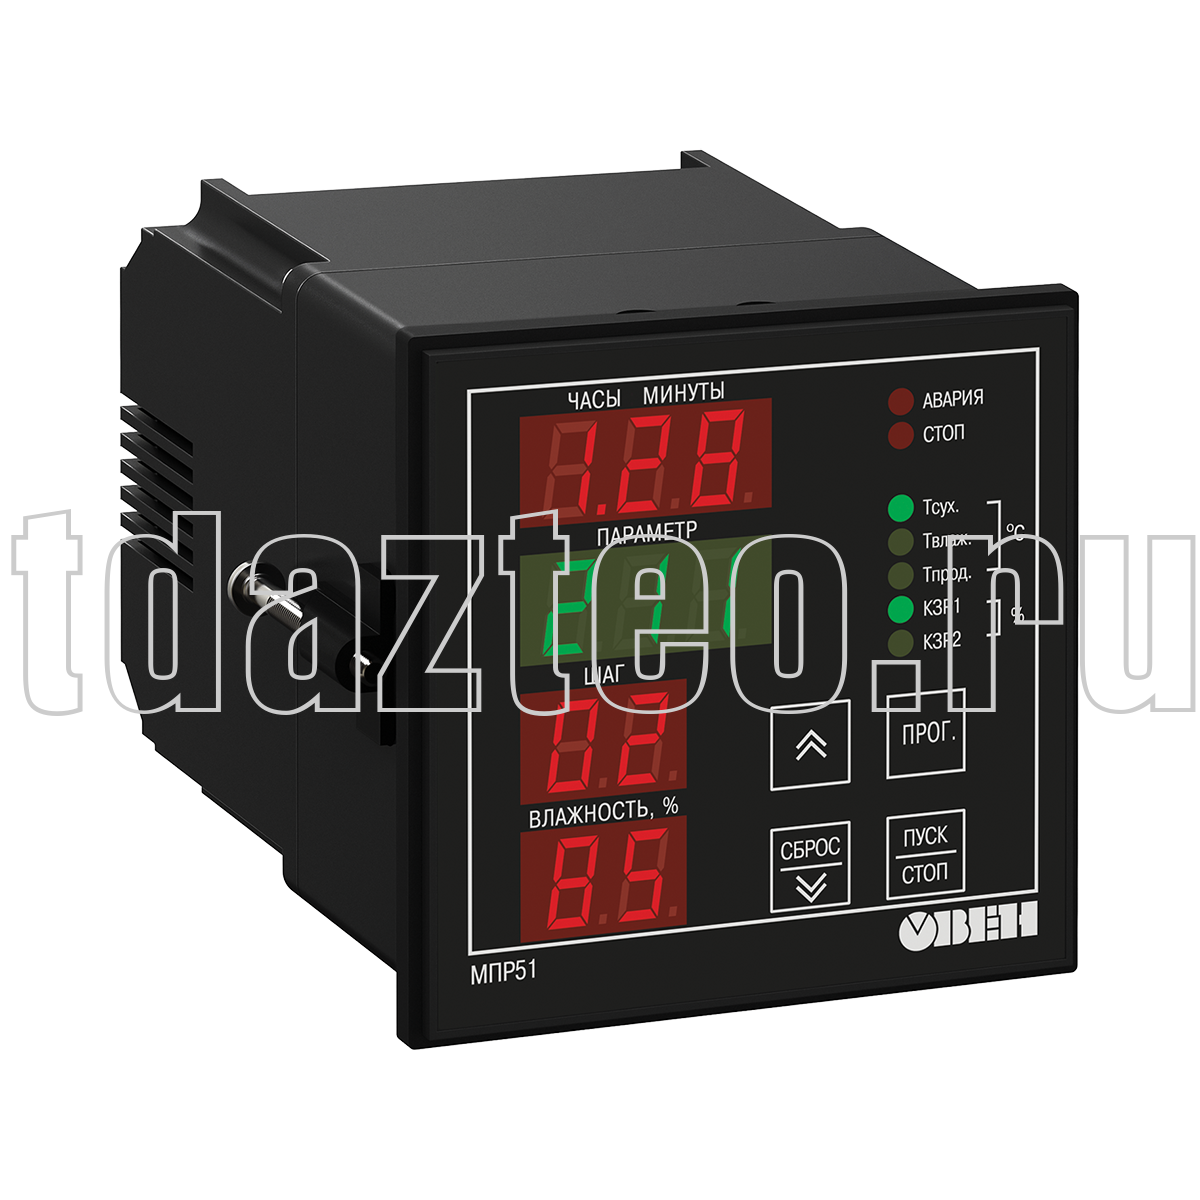 МПР51-Щ4.03 регулятор температуры и влажности, программируемый по времени ОВЕН.